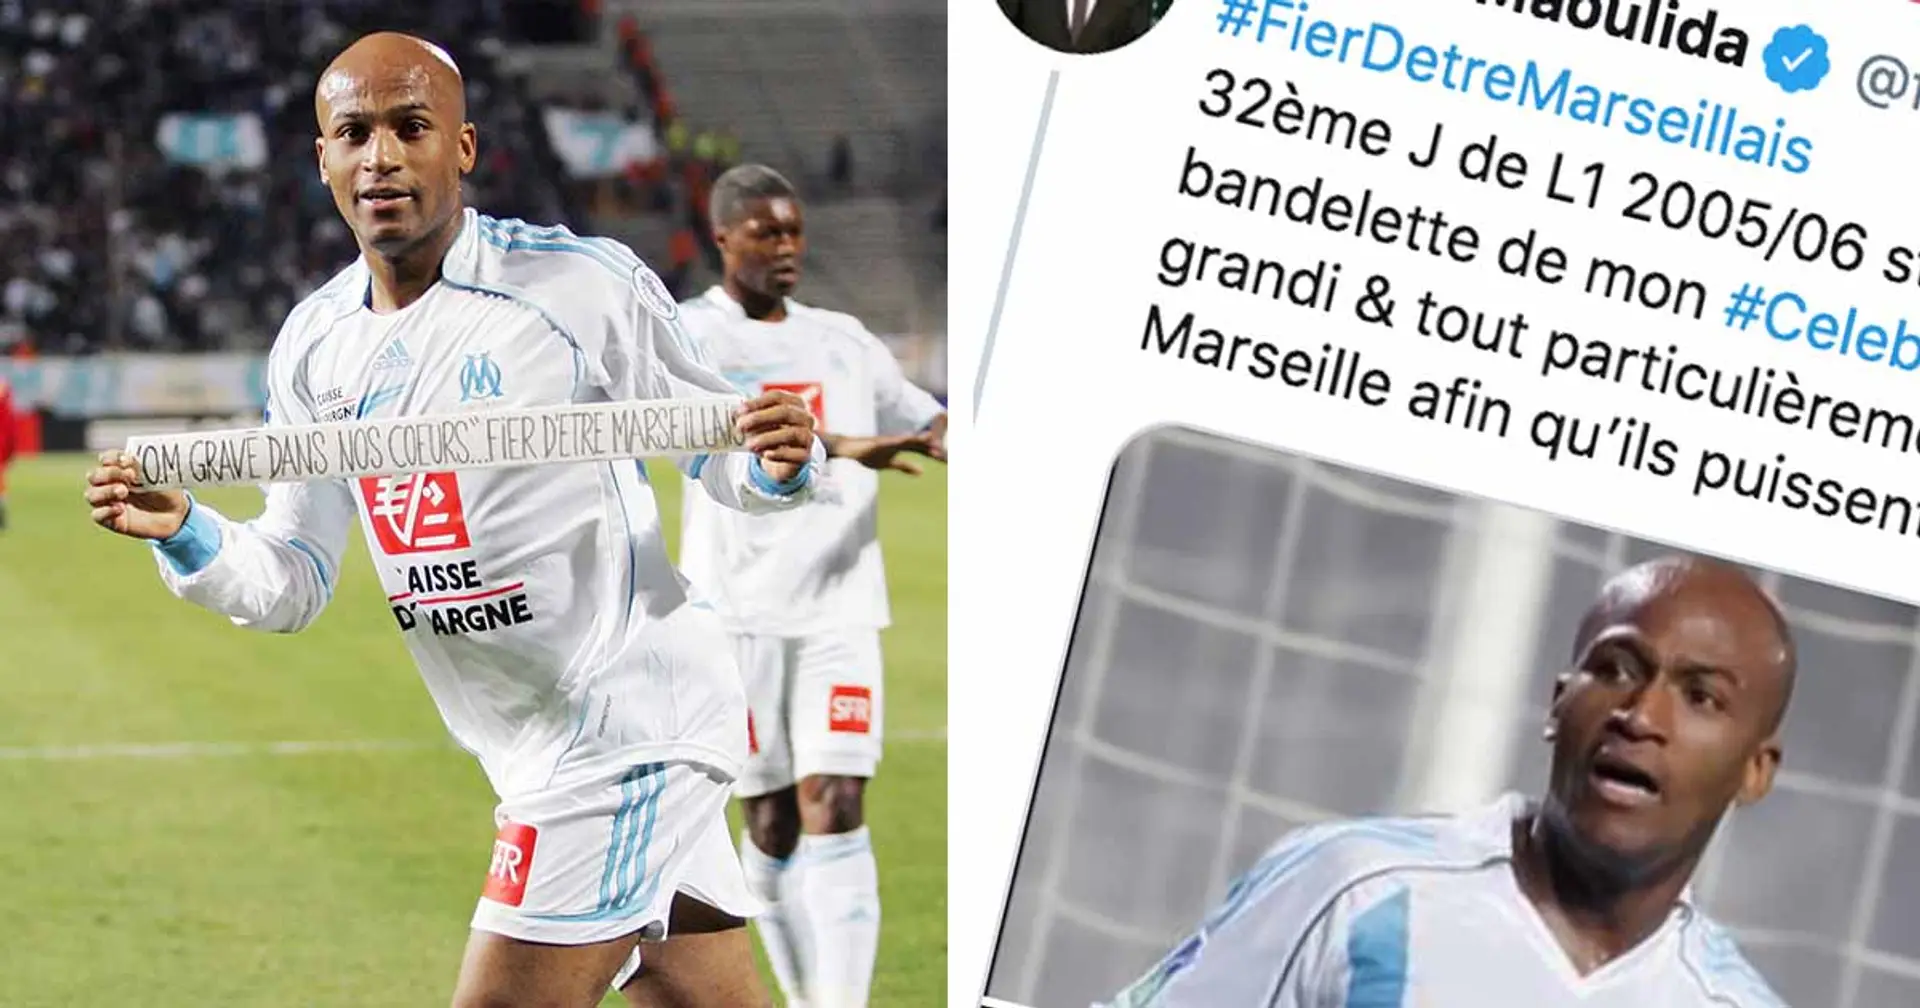 "Fier d'être Marseillais!" quand Touafilou Maoulida se rappelle via Twitter sa célébration fétiche